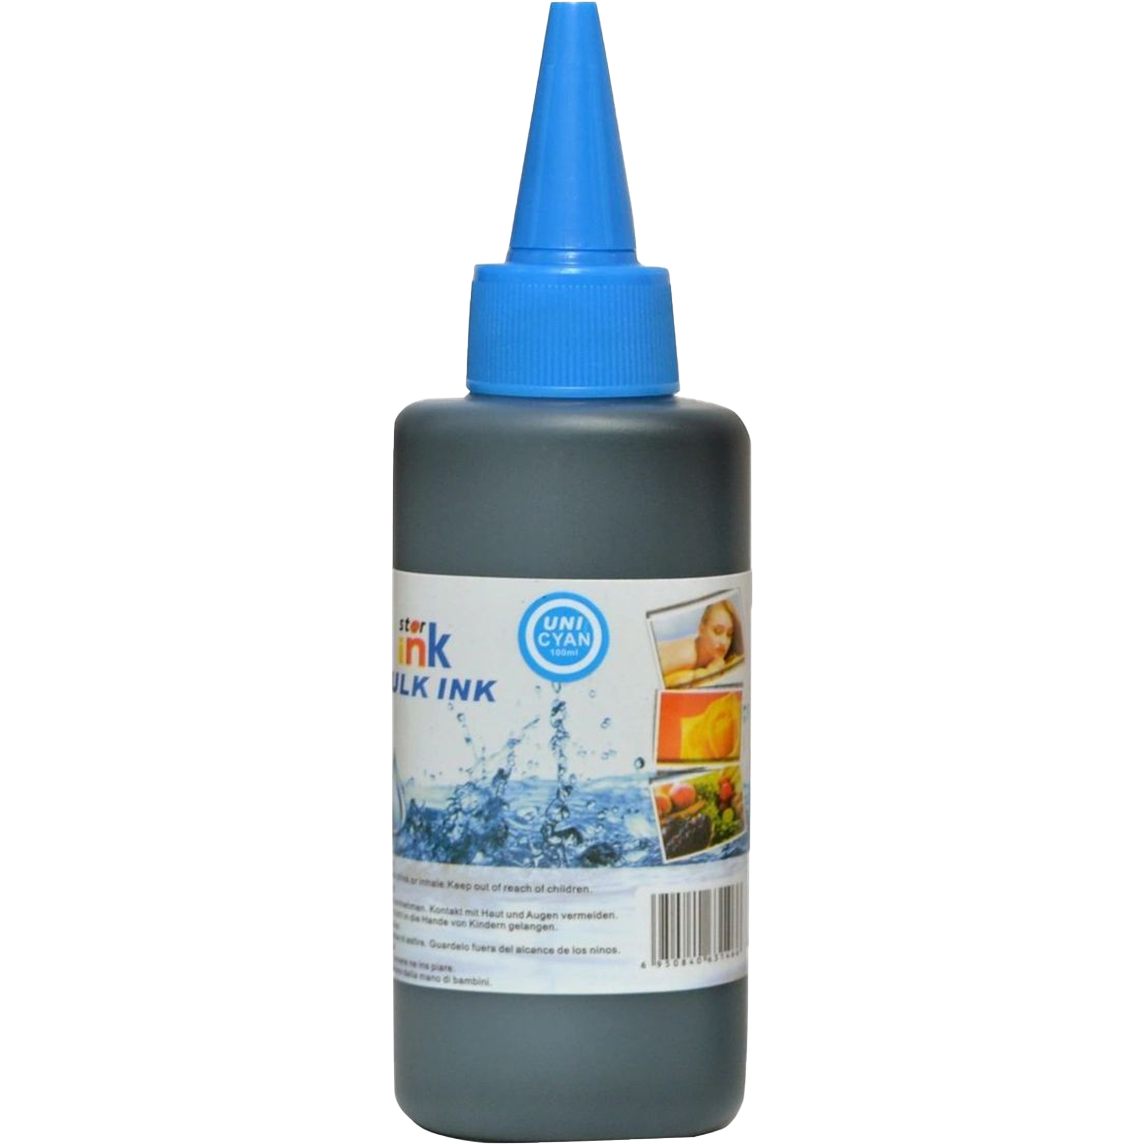 Starink Starink kompatibilní láhev s inkoustem Epson 100 ml - univerzální (Azurová)